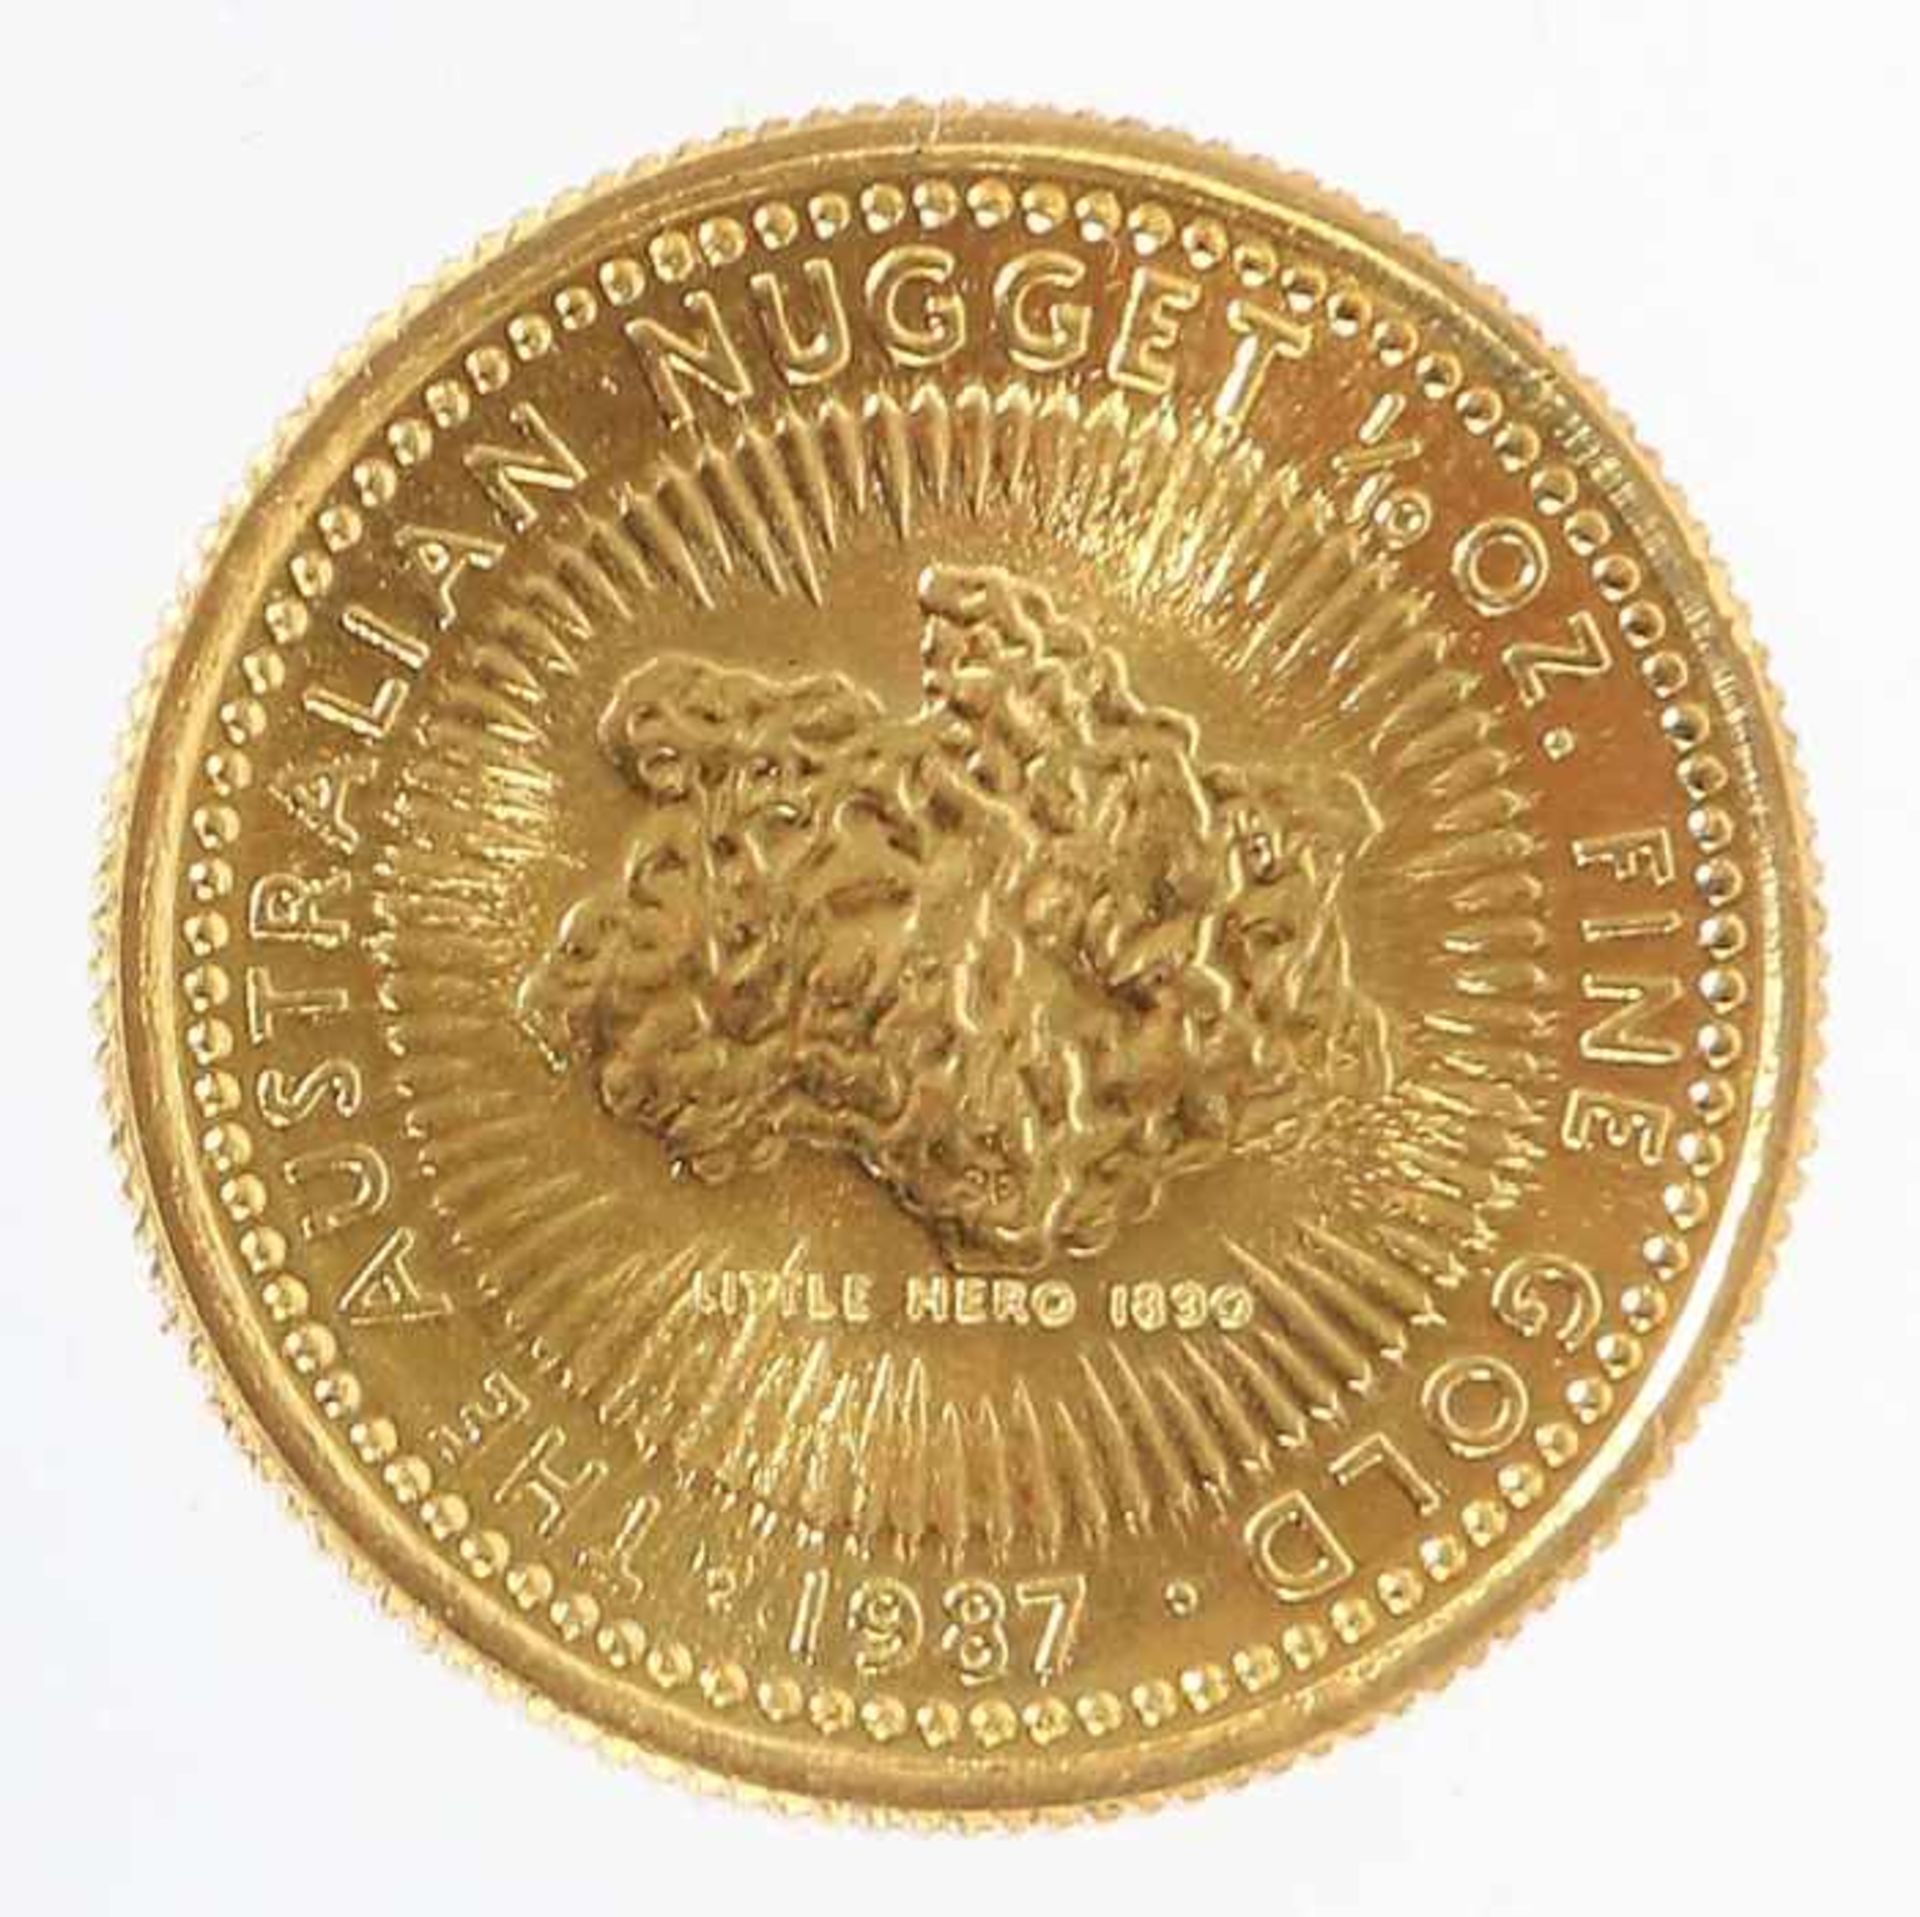 Goldmünze Australian NuggetAustralien, 1987, Gold 999, ca. 3,14 g, averse mit Seitenprofil Elizabeth - Bild 2 aus 2